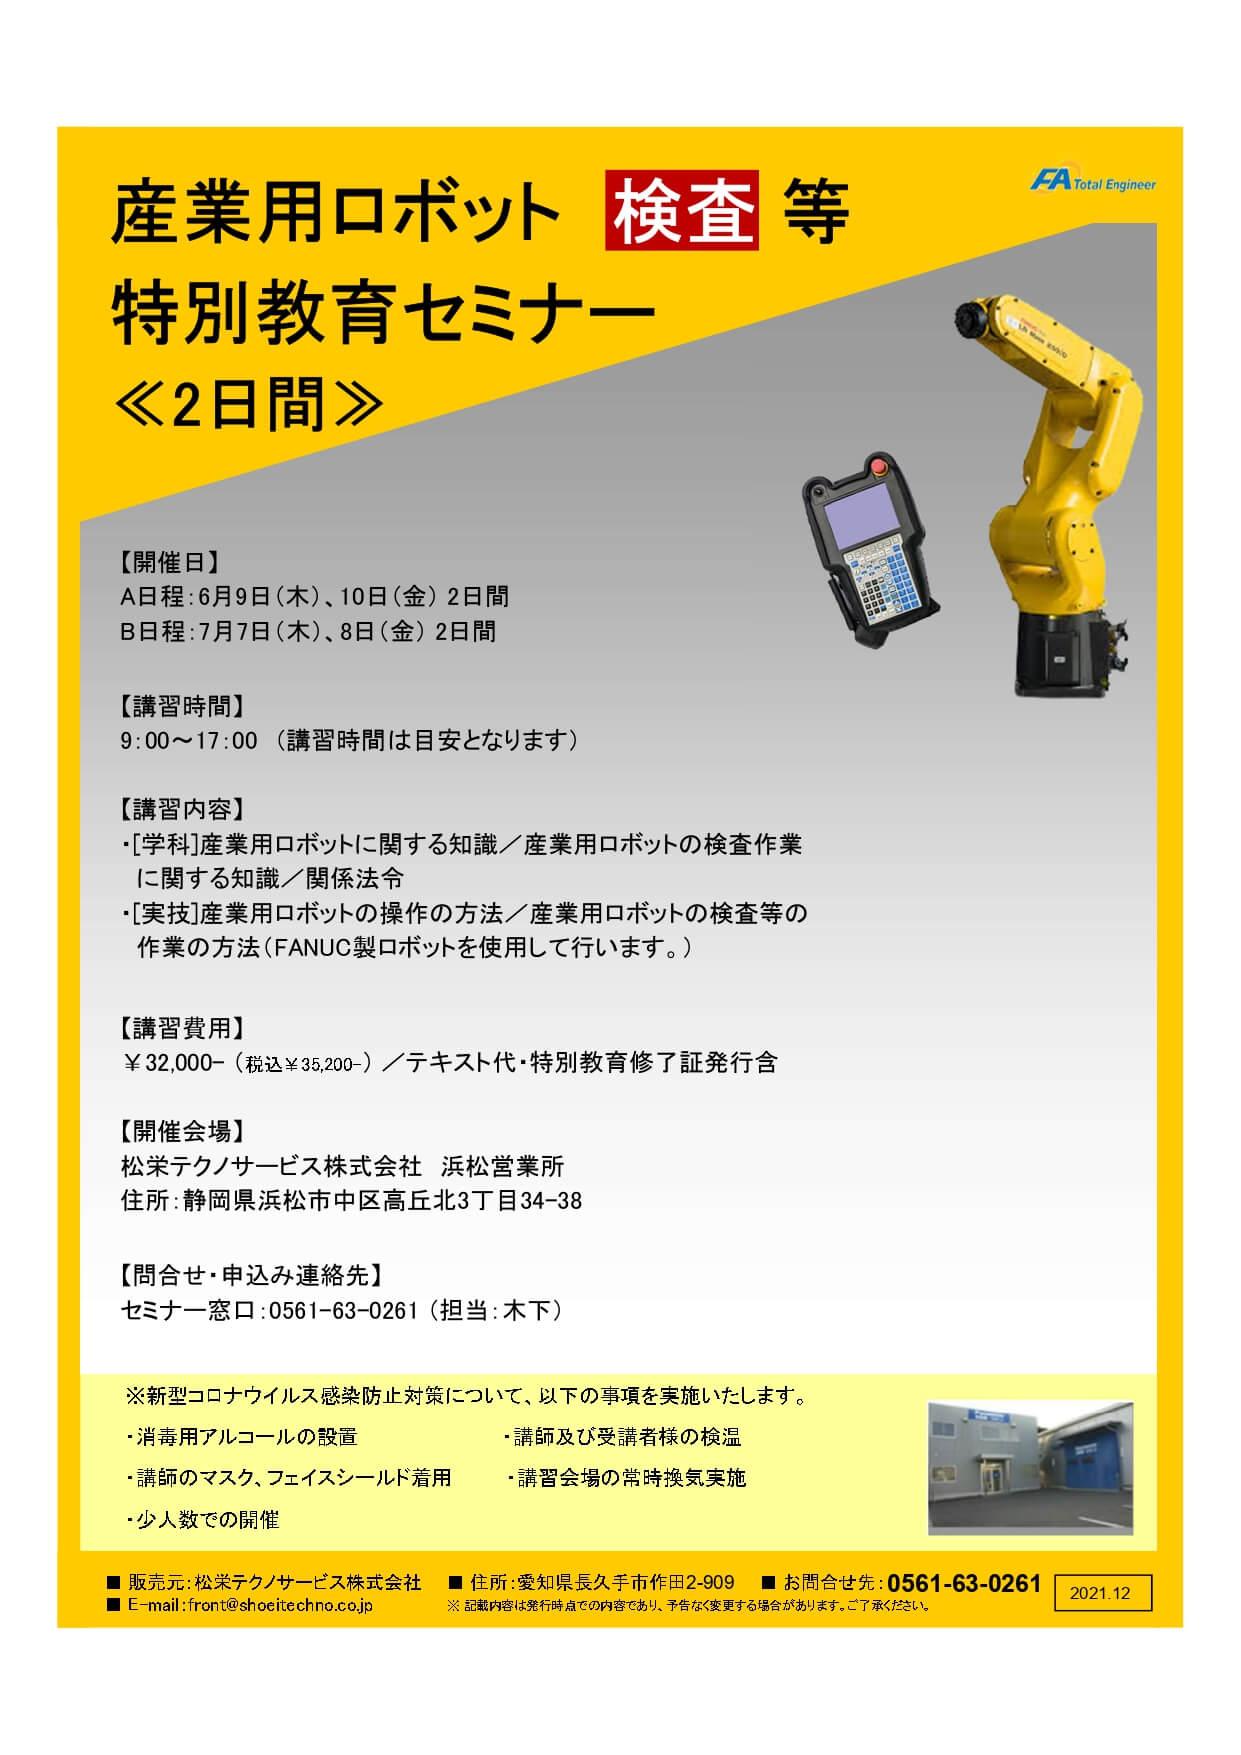 【終了しました】産業用ロボット特別教育（検査等）静岡会場開催のお知らせ【2022年6月～2022年7月】